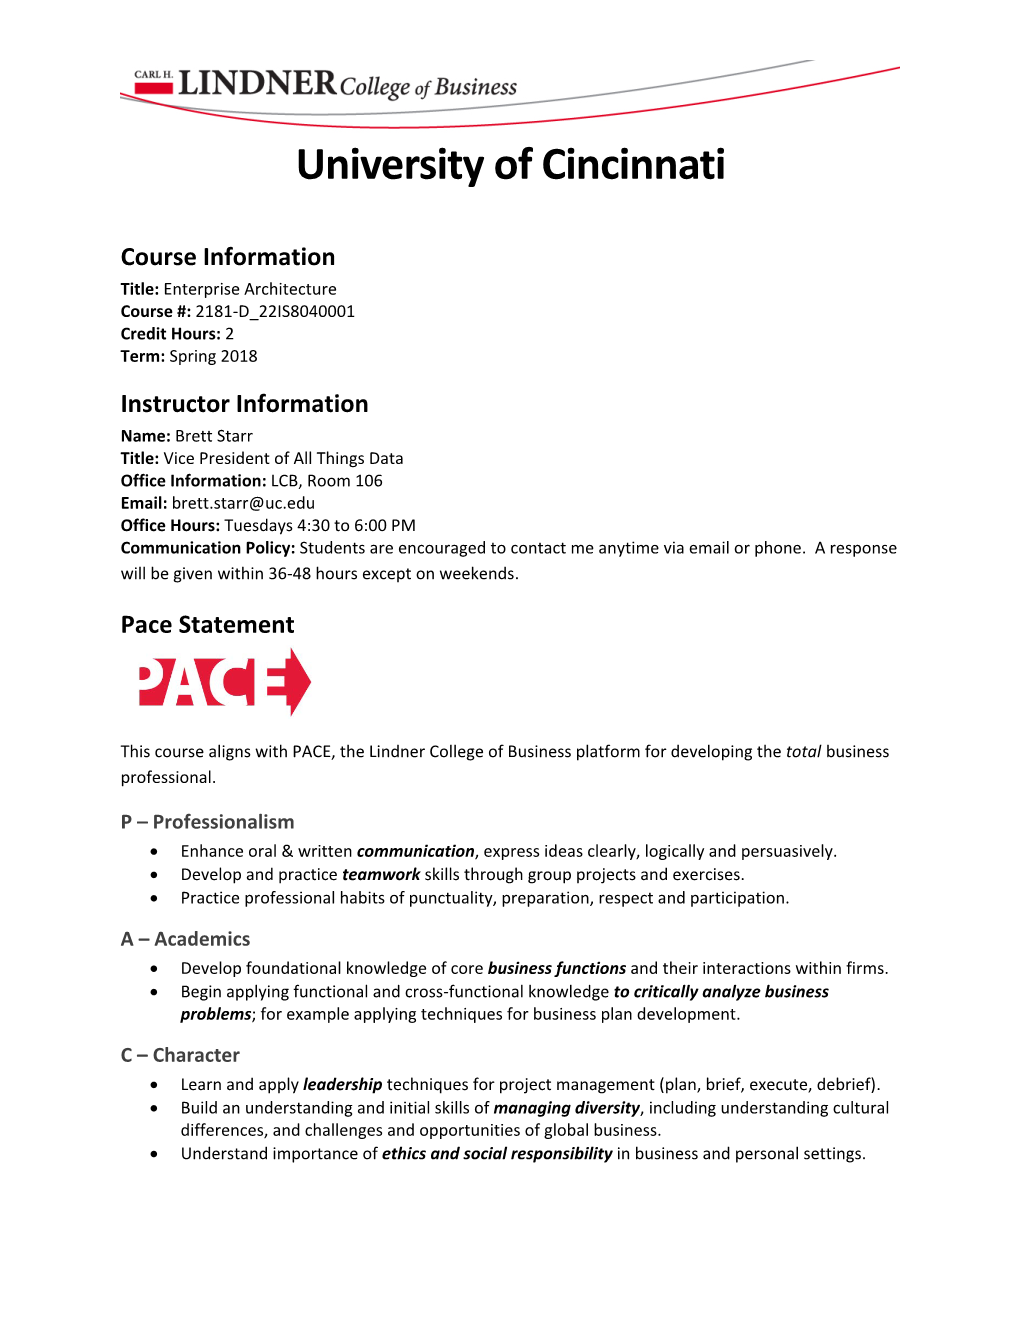 University of Cincinnati Course Information